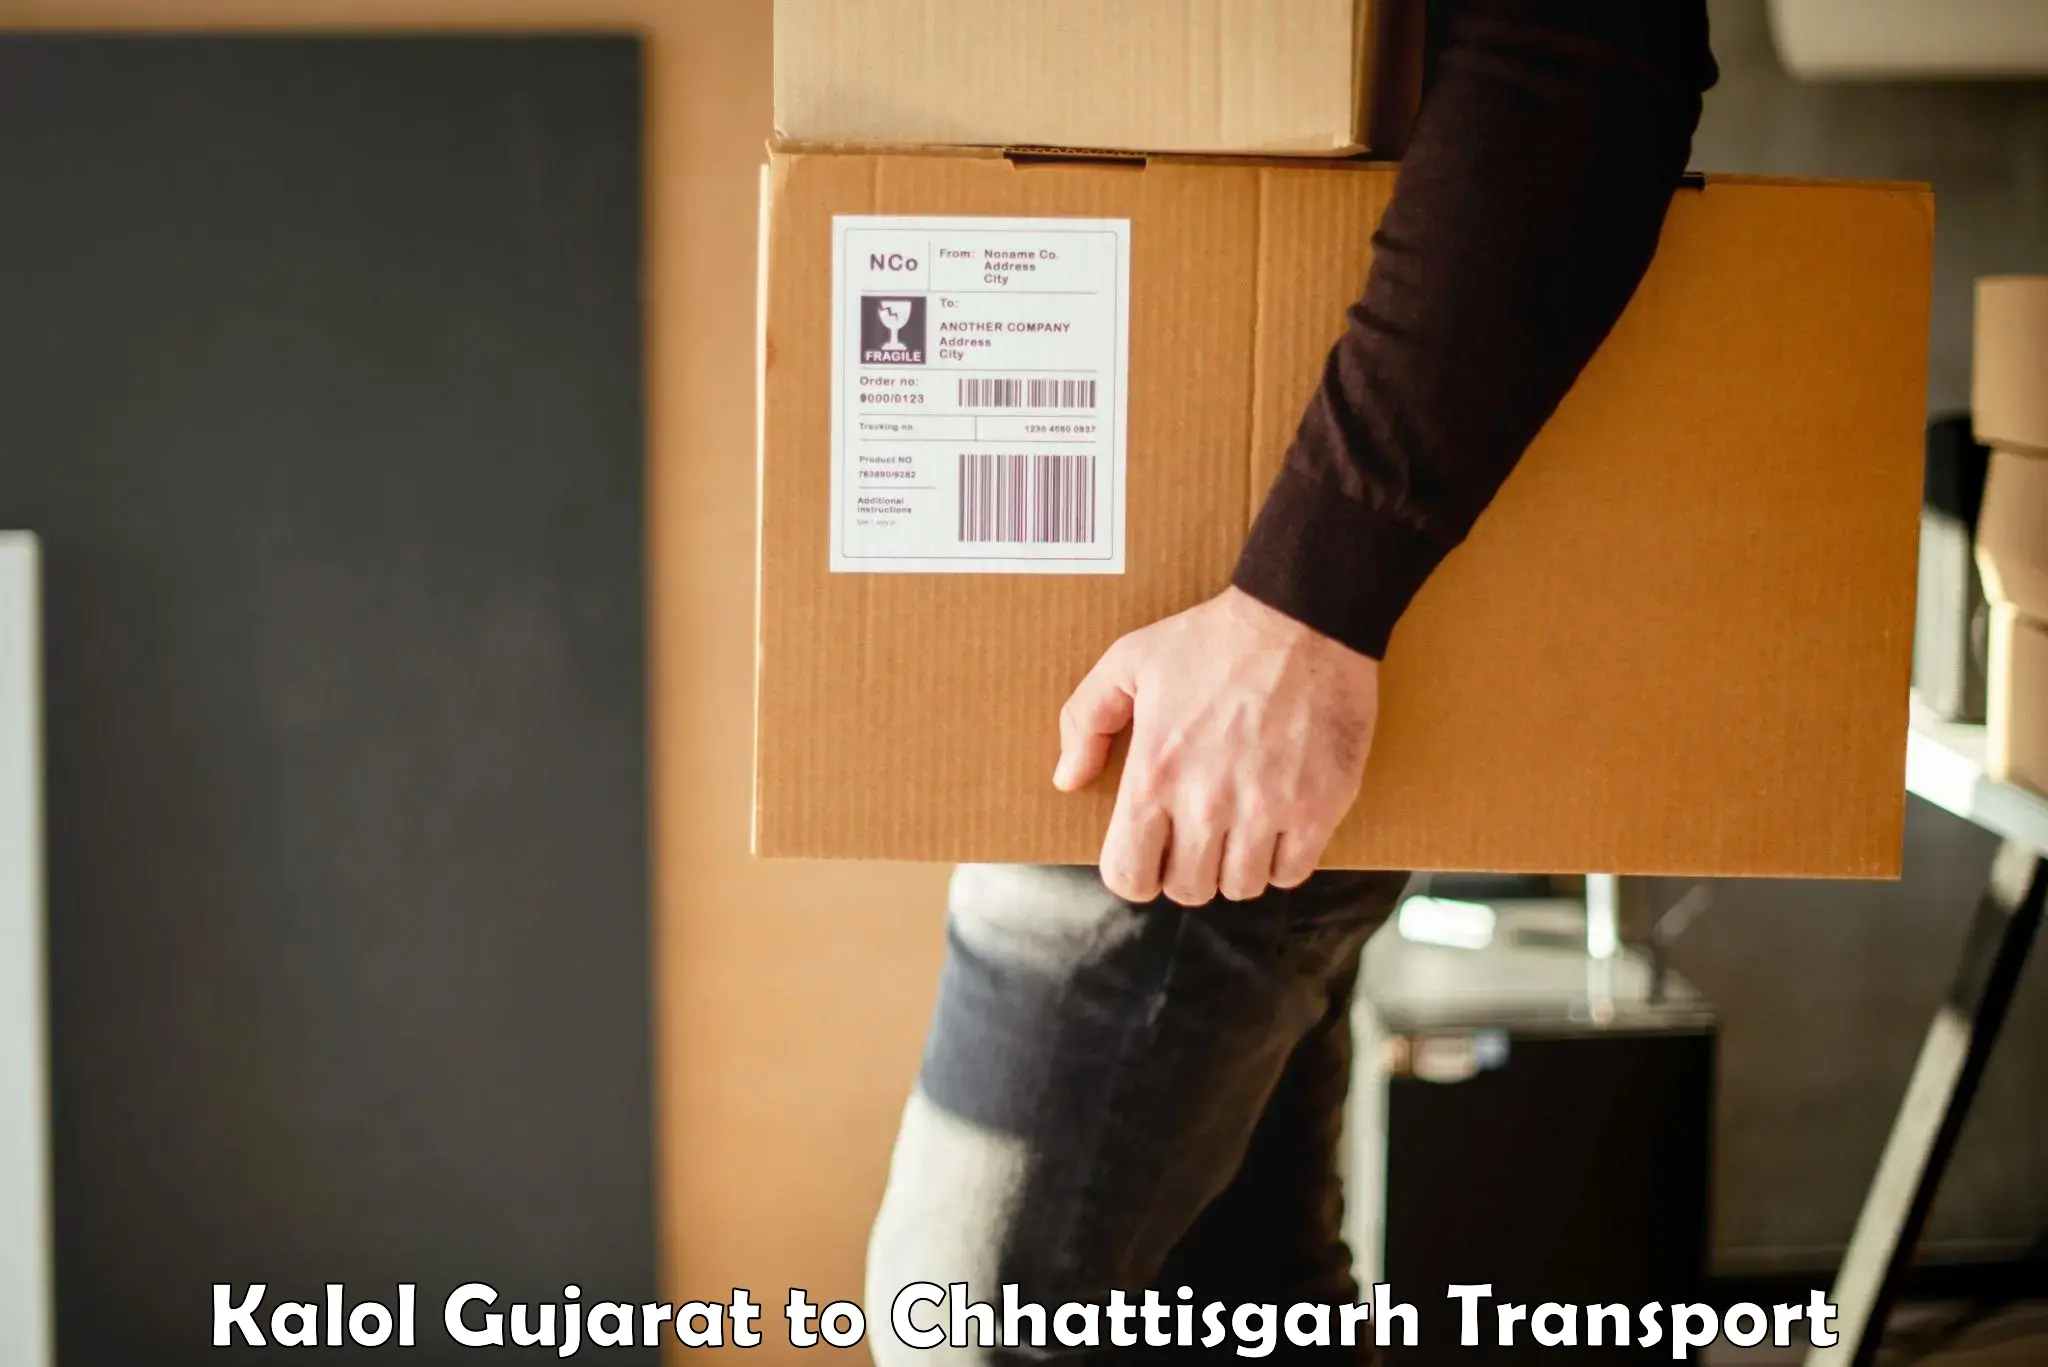 Truck transport companies in India Kalol Gujarat to Sakti